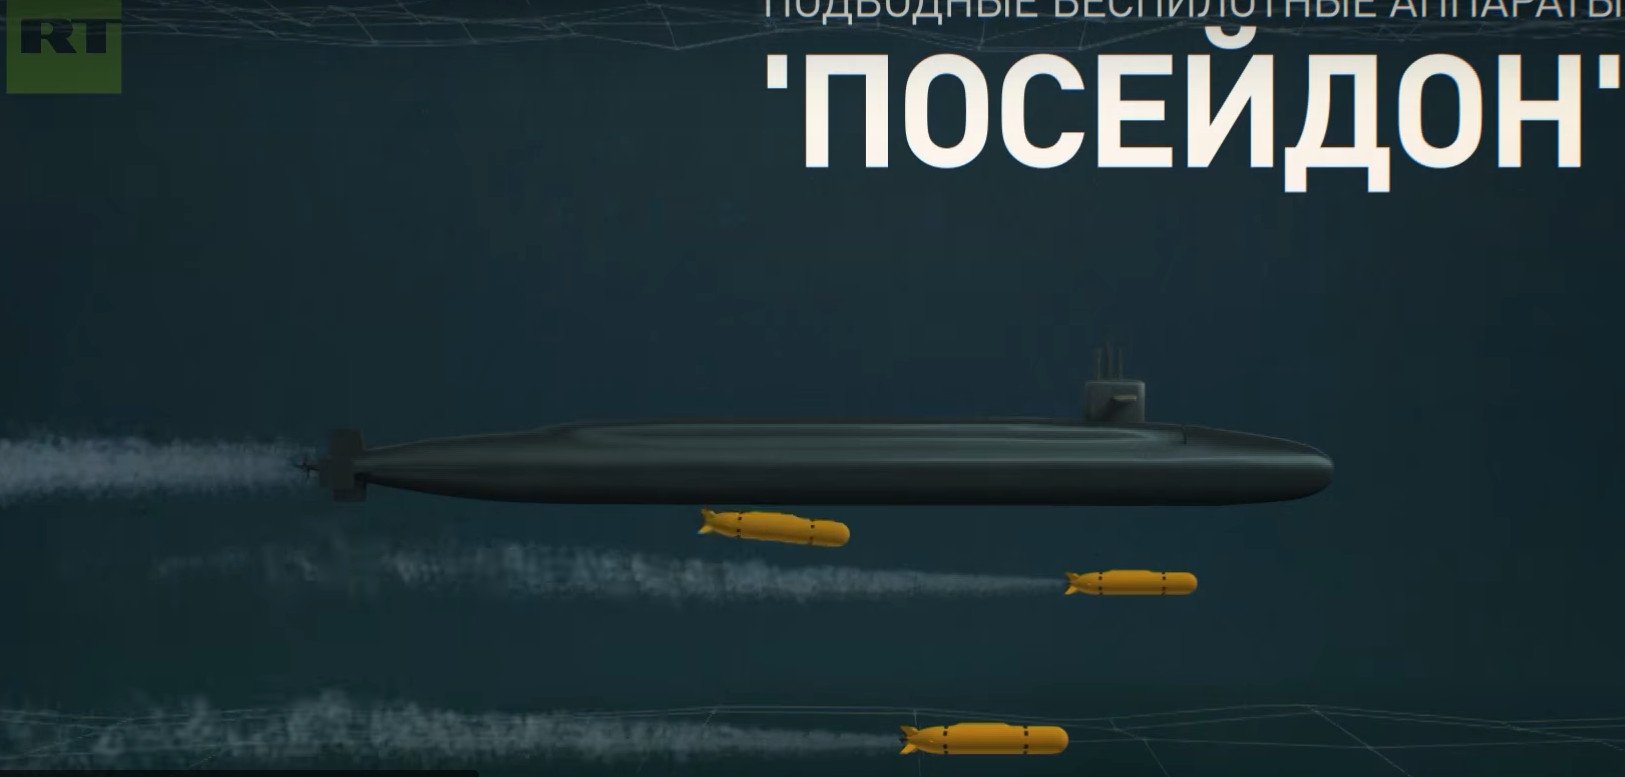 Посейдон подводный аппарат беспилотные подводные аппараты. Подводная ракета Посейдон. Посейдон беспилотный подводный аппарат. Атомная подводная лодка Посейдон. Посейдон ядерное оружие.